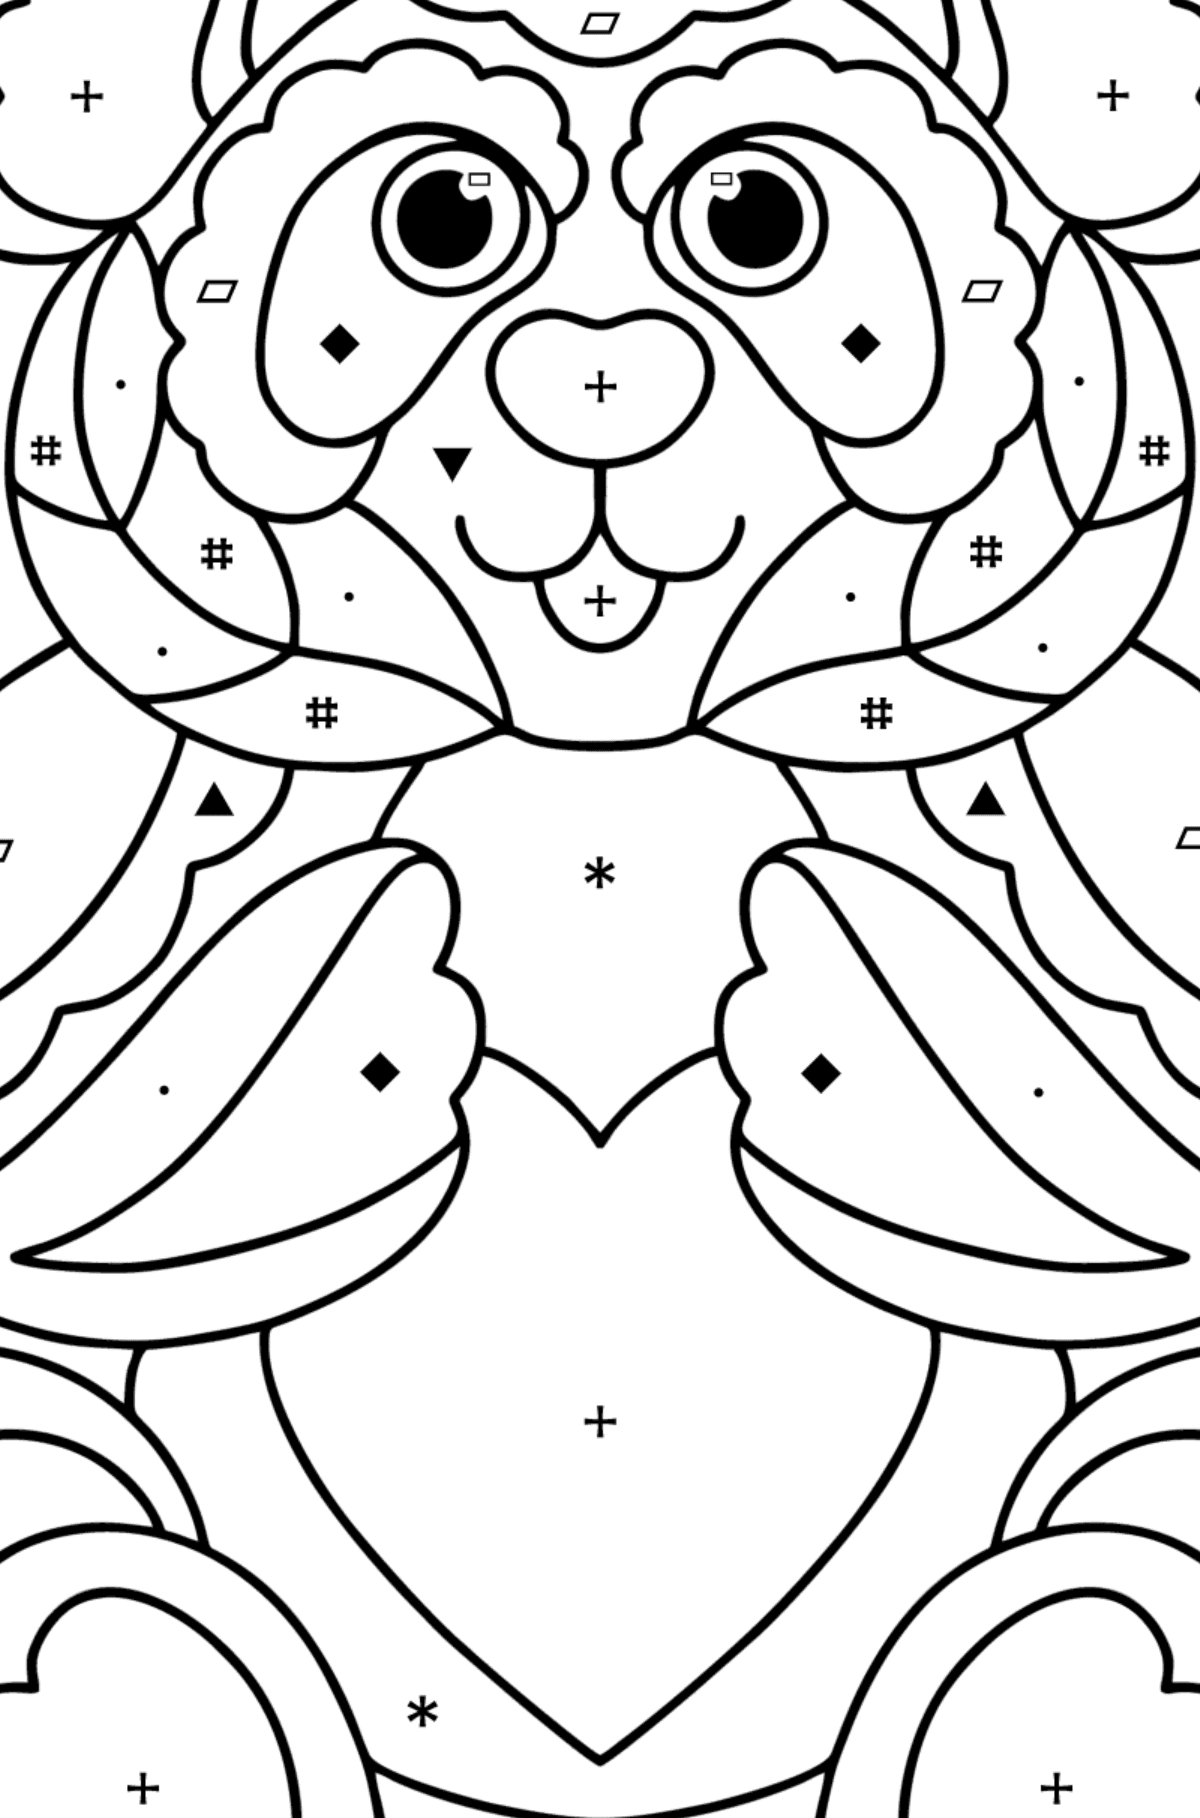 Kolorowanka Antystres pandy - Kolorowanie według symboli i figur geometrycznych dla dzieci